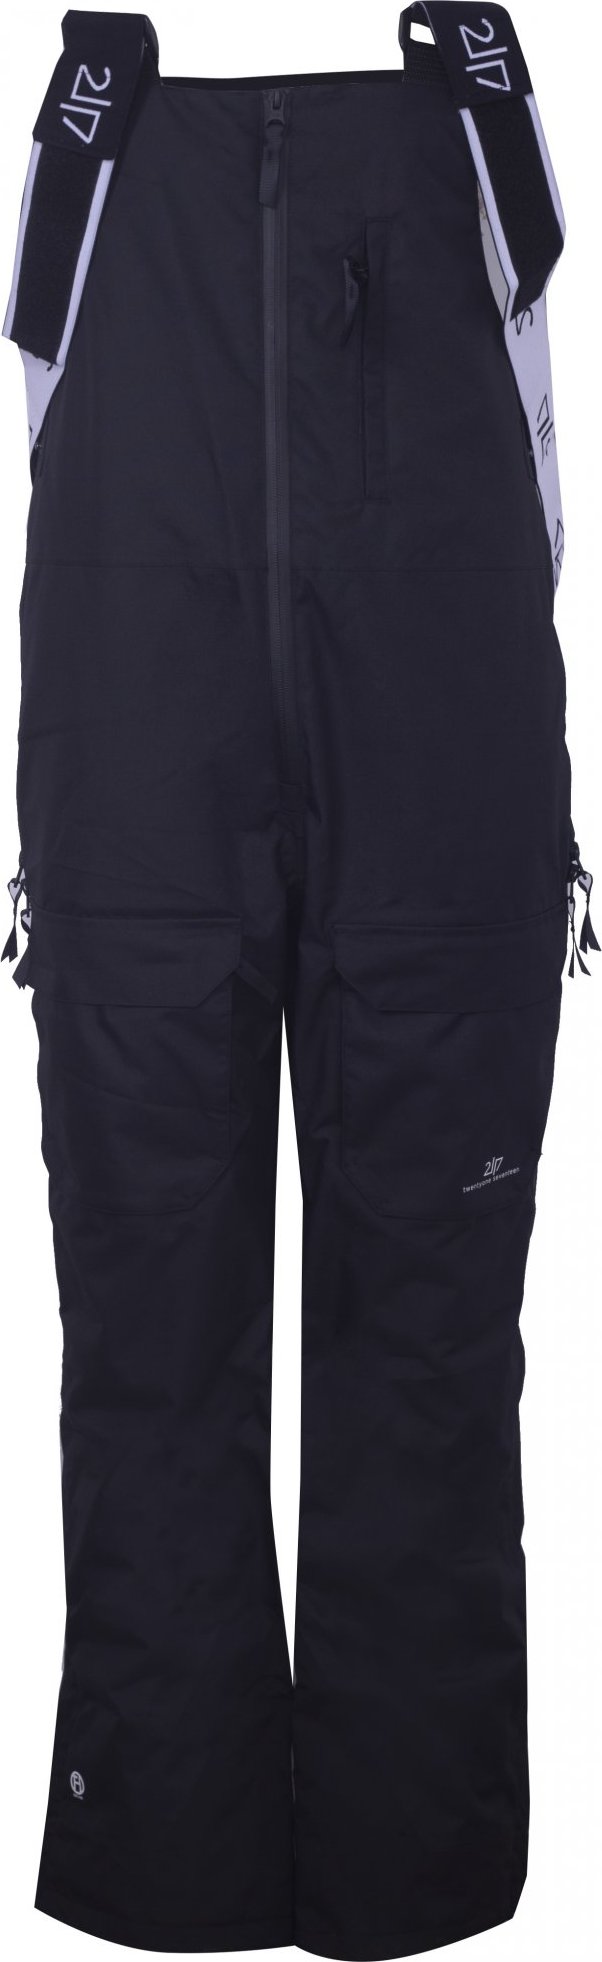 Dámské lyžařské kalhoty s náprsenkou 2117 Backa Eco černá Velikost: M